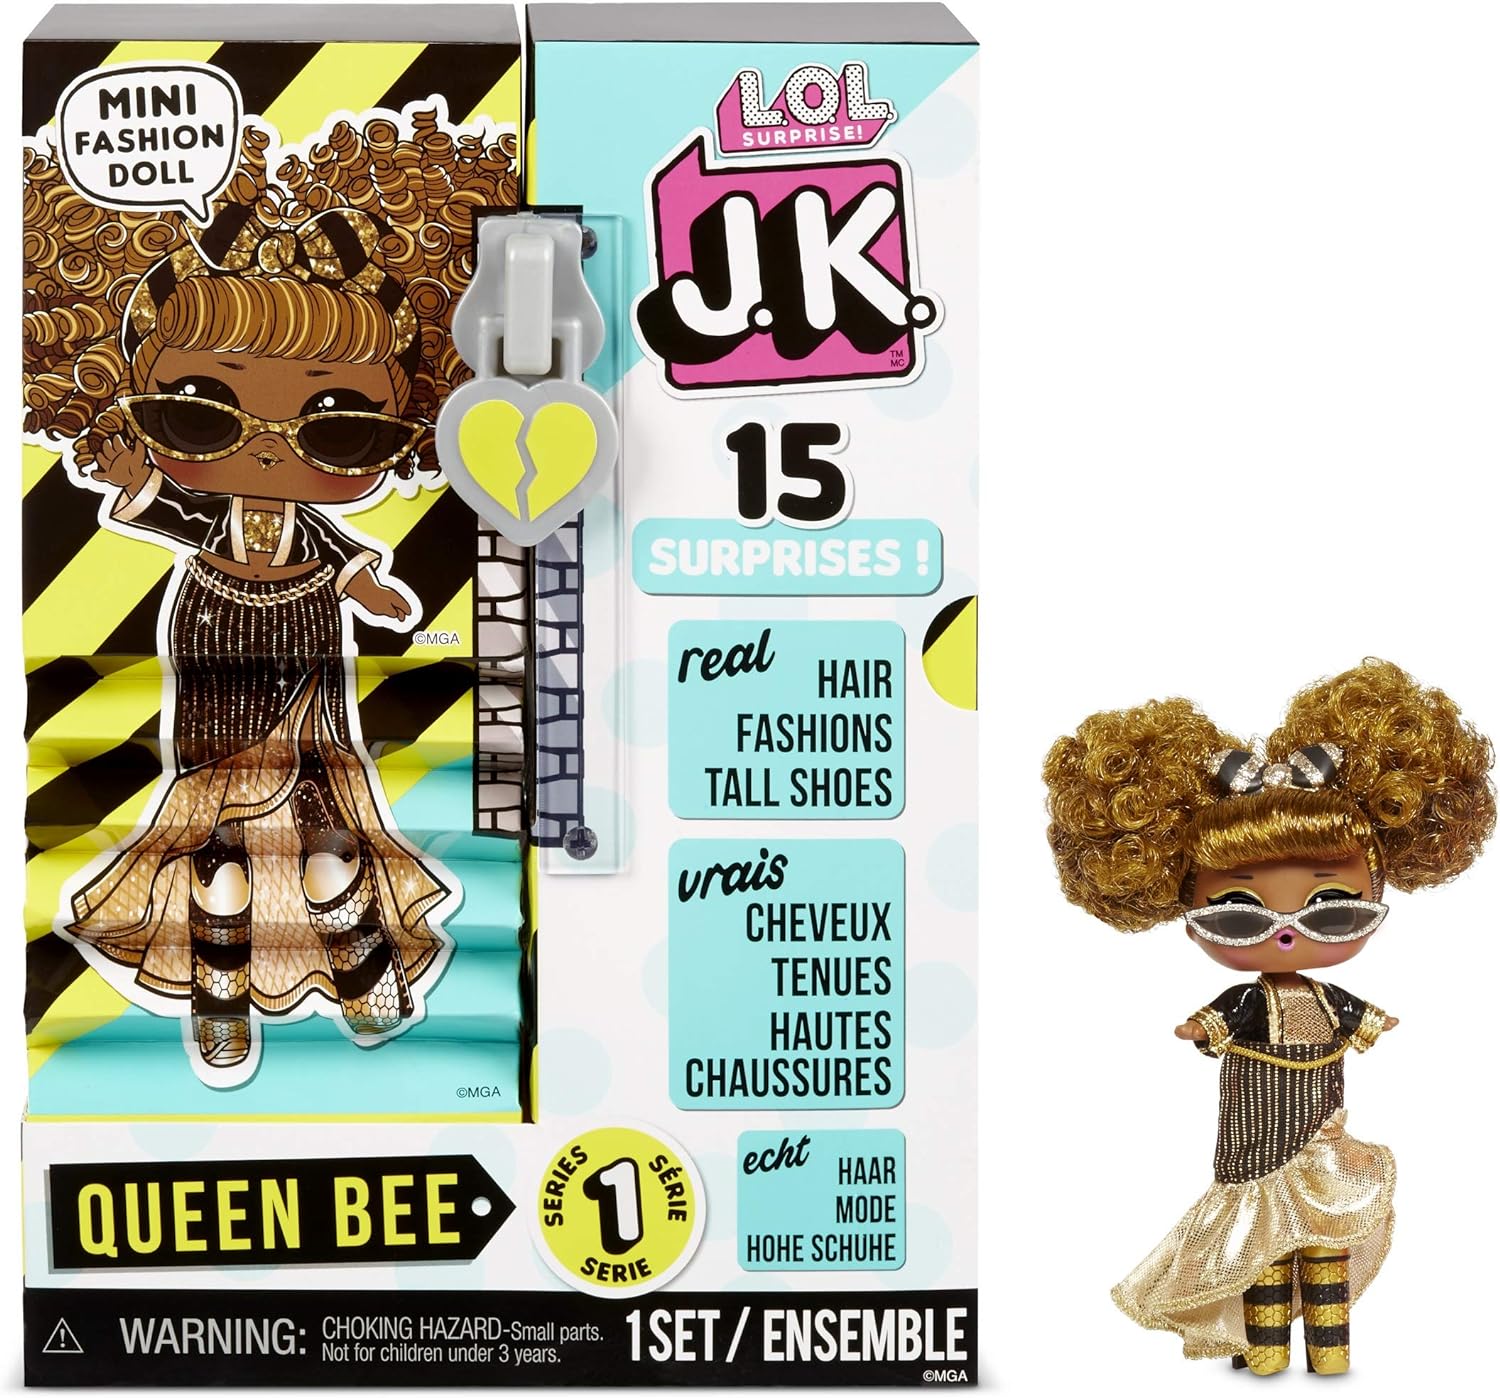 LOL Surprise Queen Bee Miękka pluszowa lalka